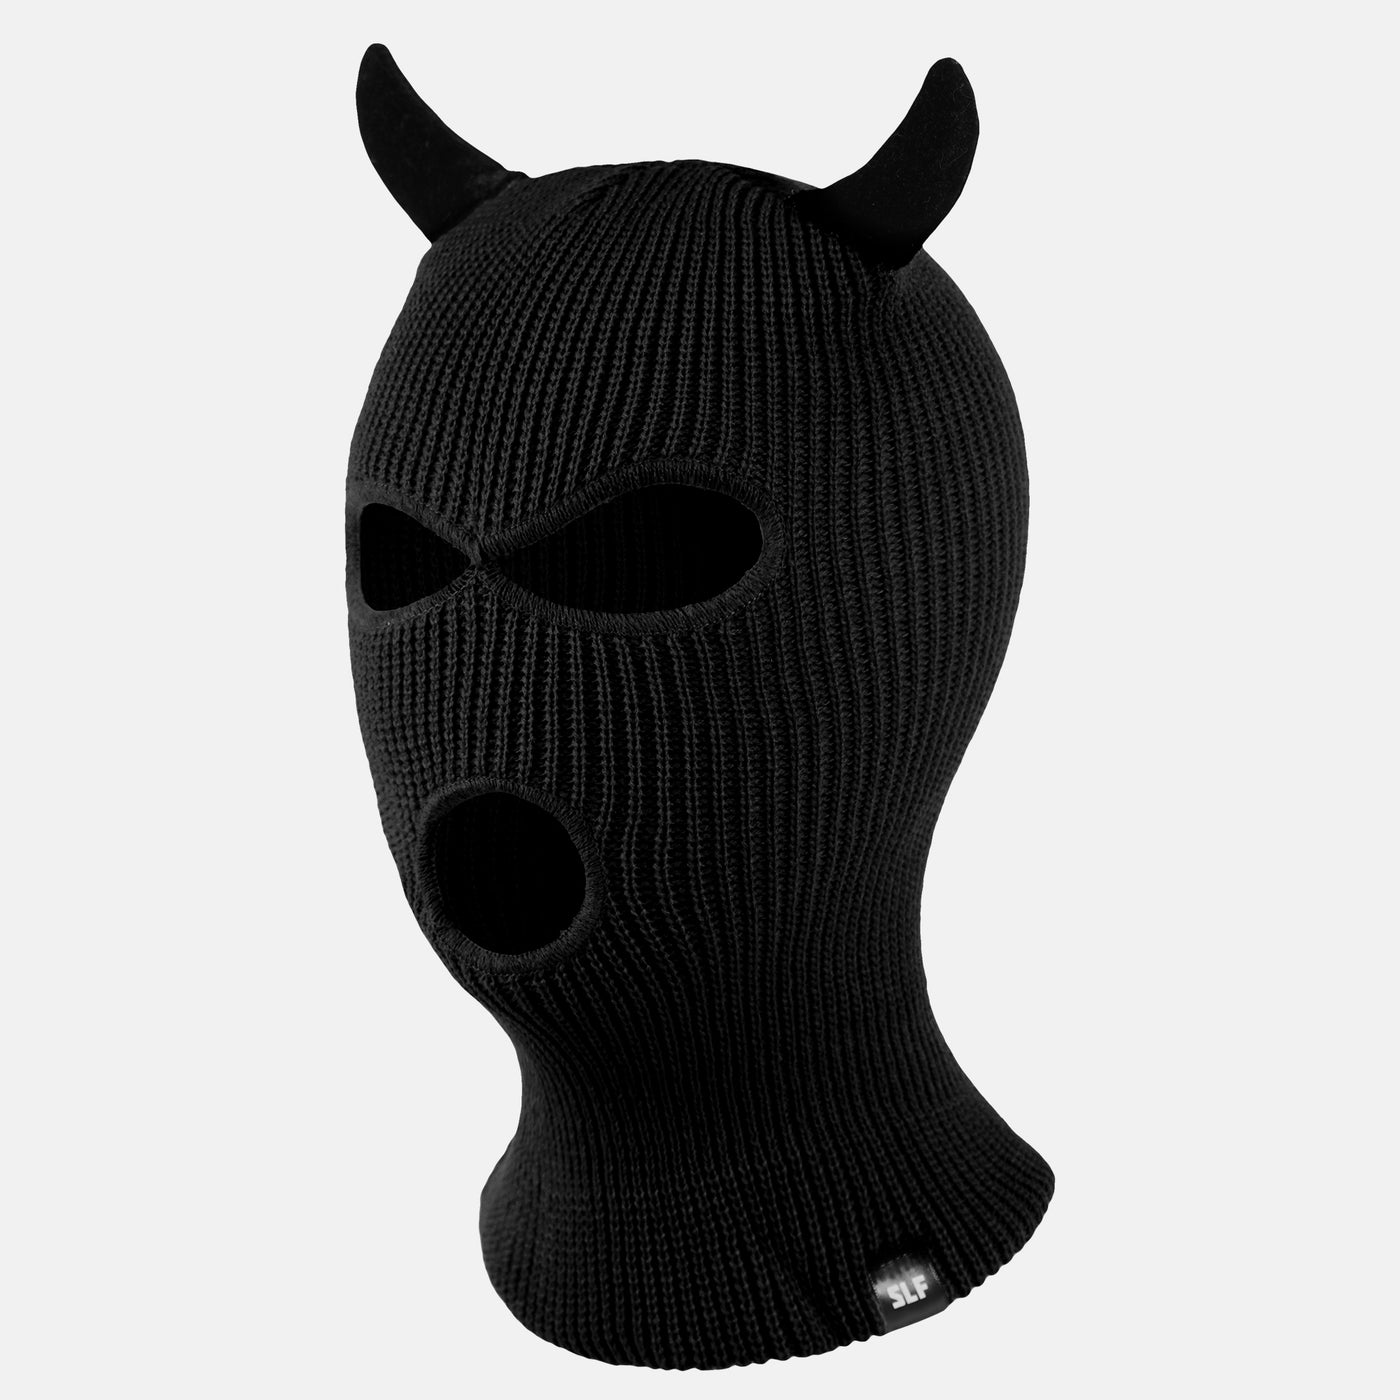 Diablo Black Ski Mask